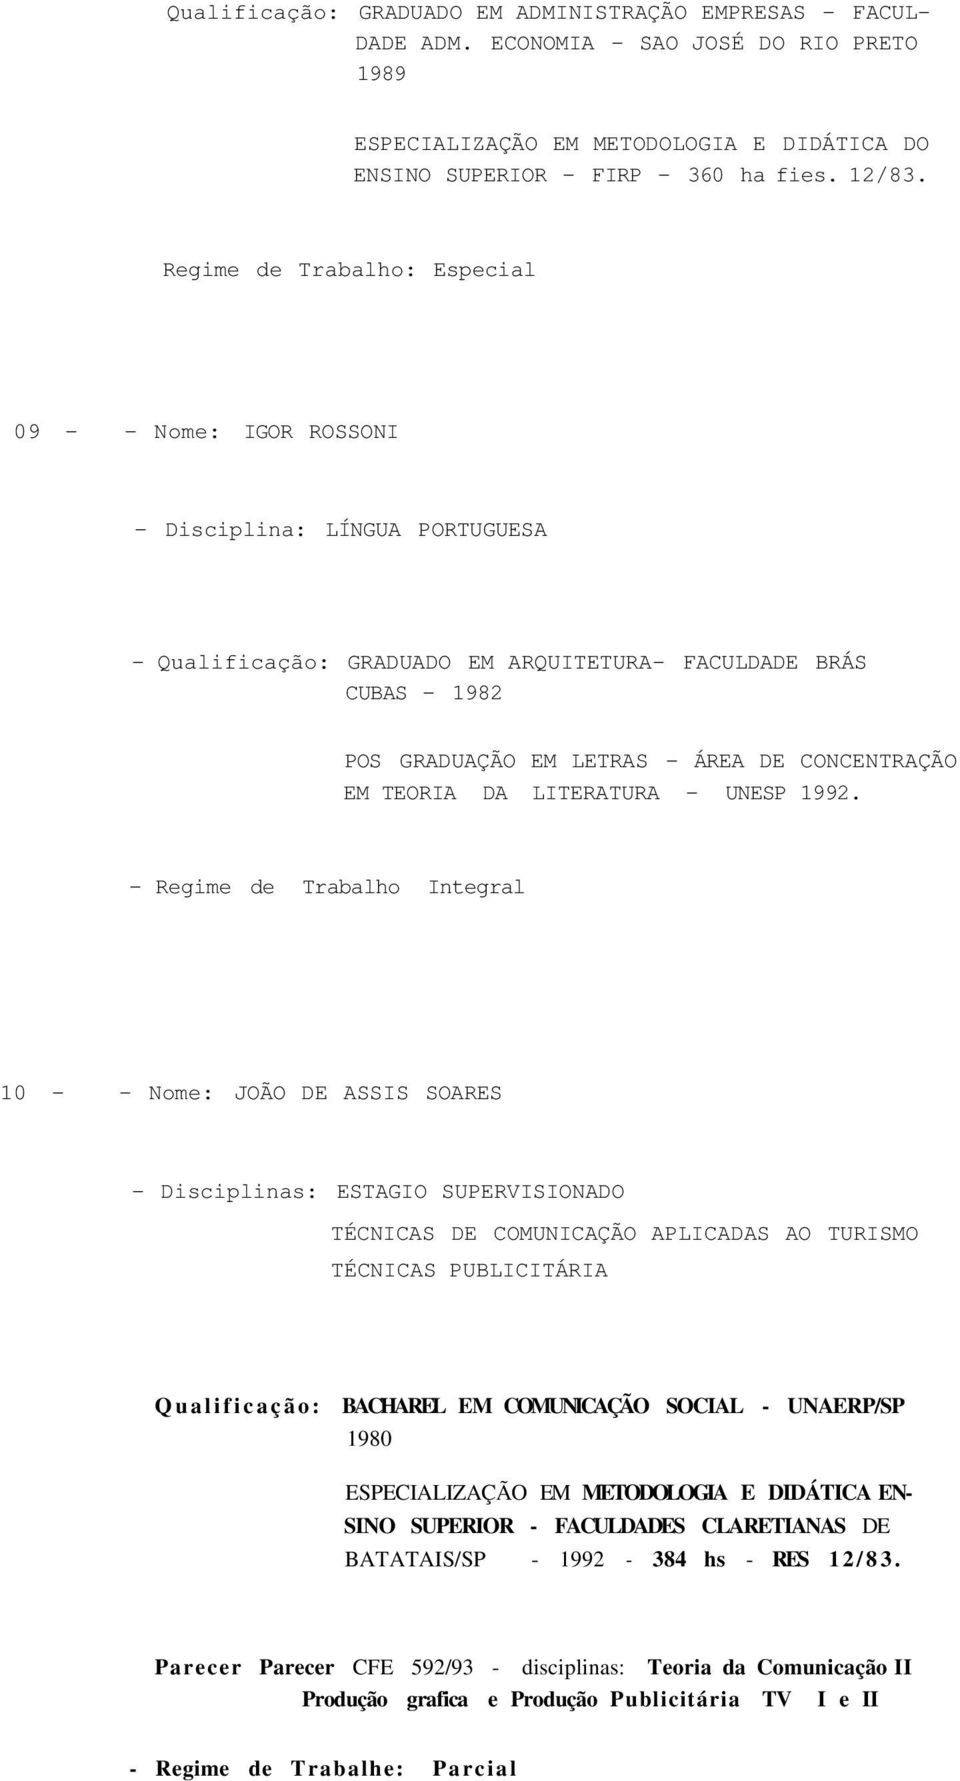 CONCENTRAÇÃO EM TEORIA DA LITERATURA - UNESP 1992.